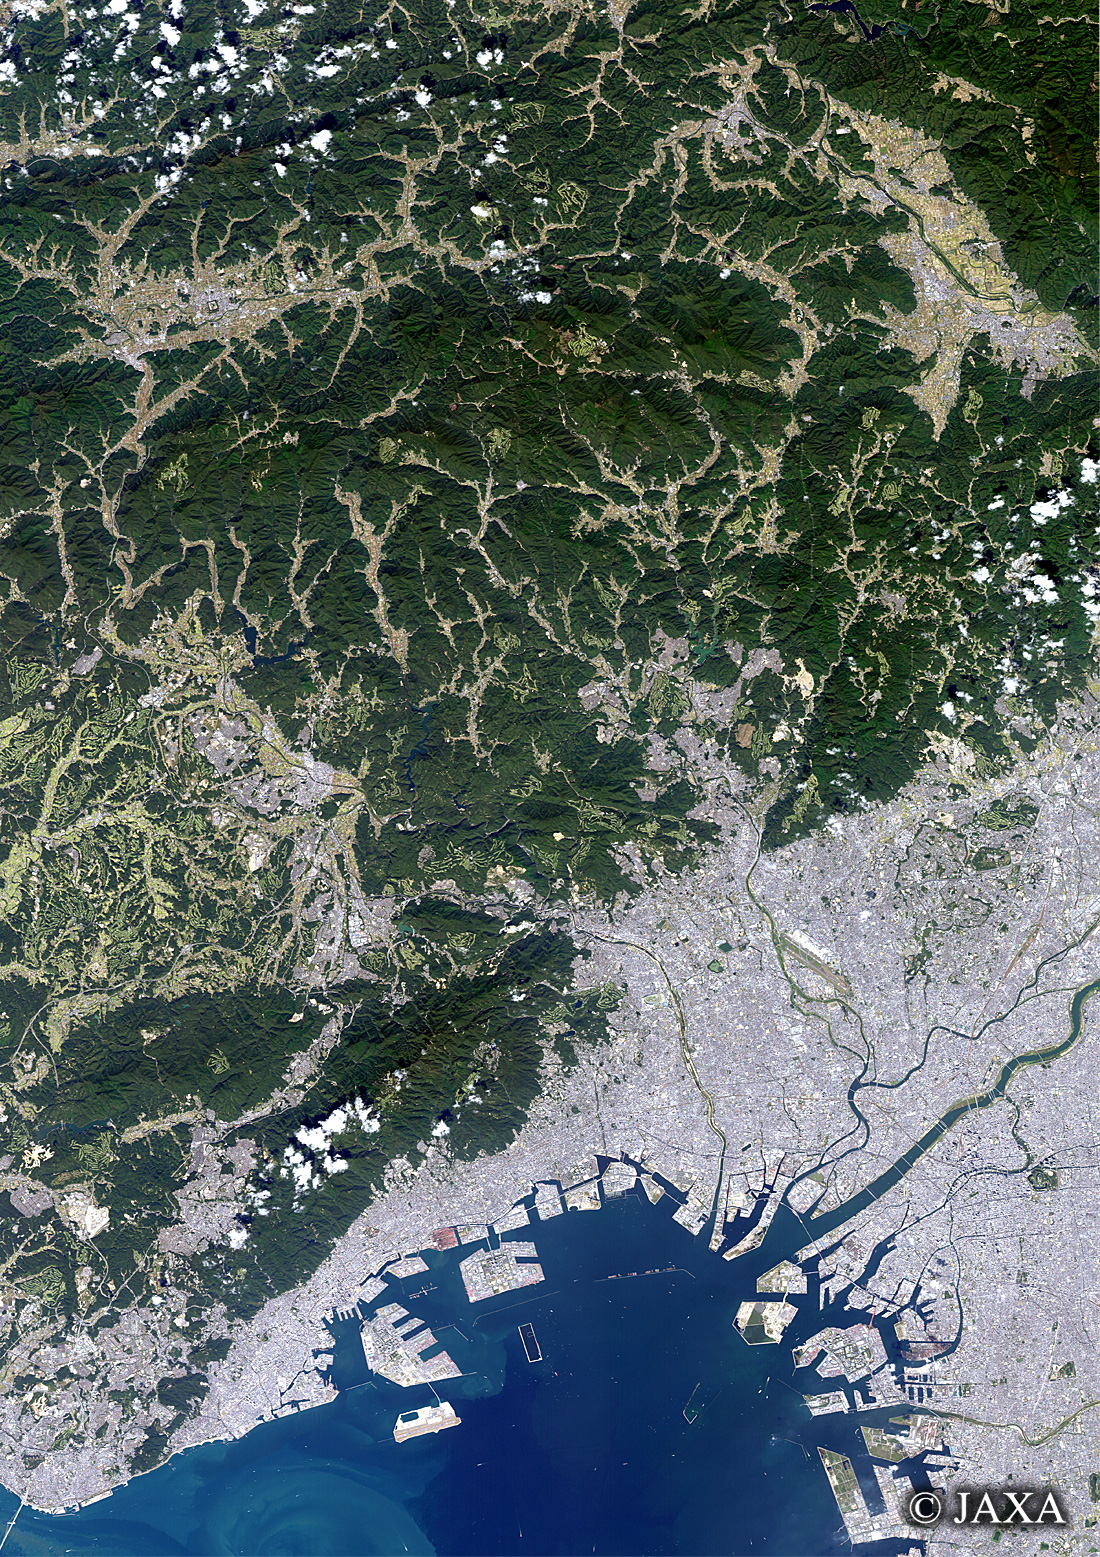 だいちから見た日本の都市 兵庫県・大阪府周辺:衛星画像